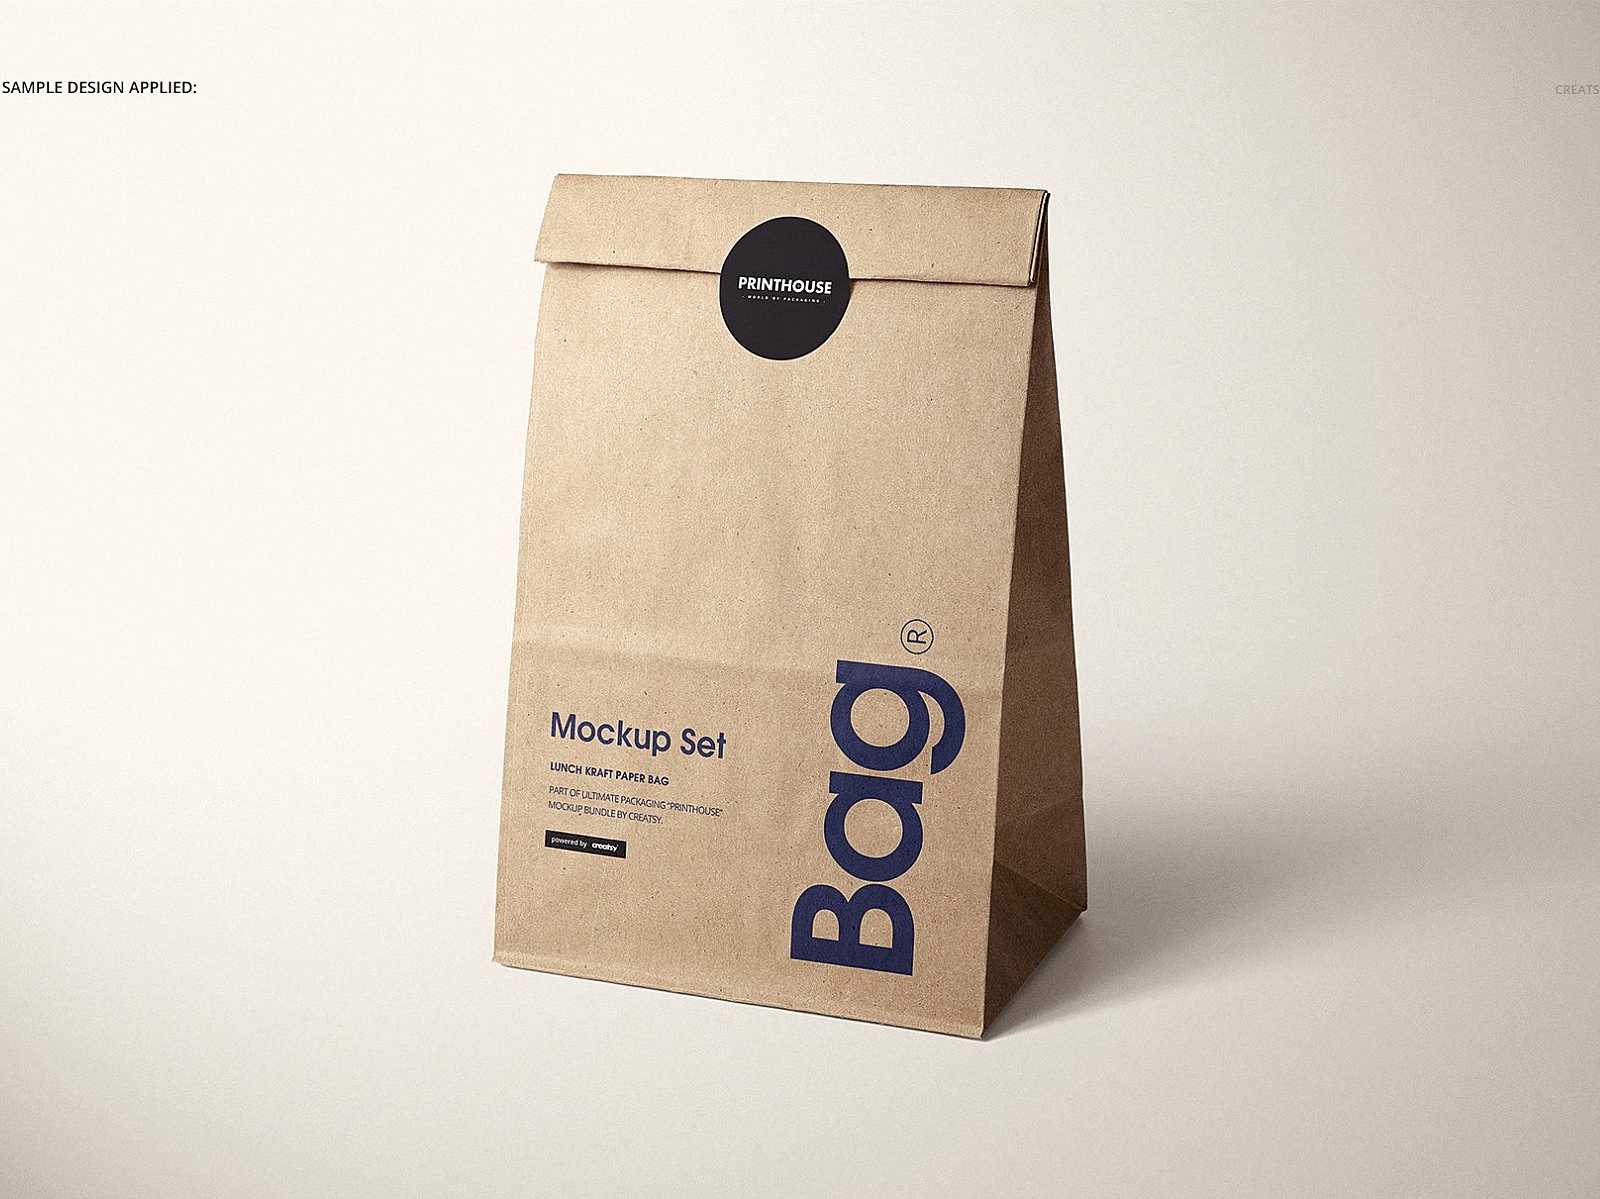 Lunch Kraft Paper Bag Mockup Set by Mockup5 on Dribbble